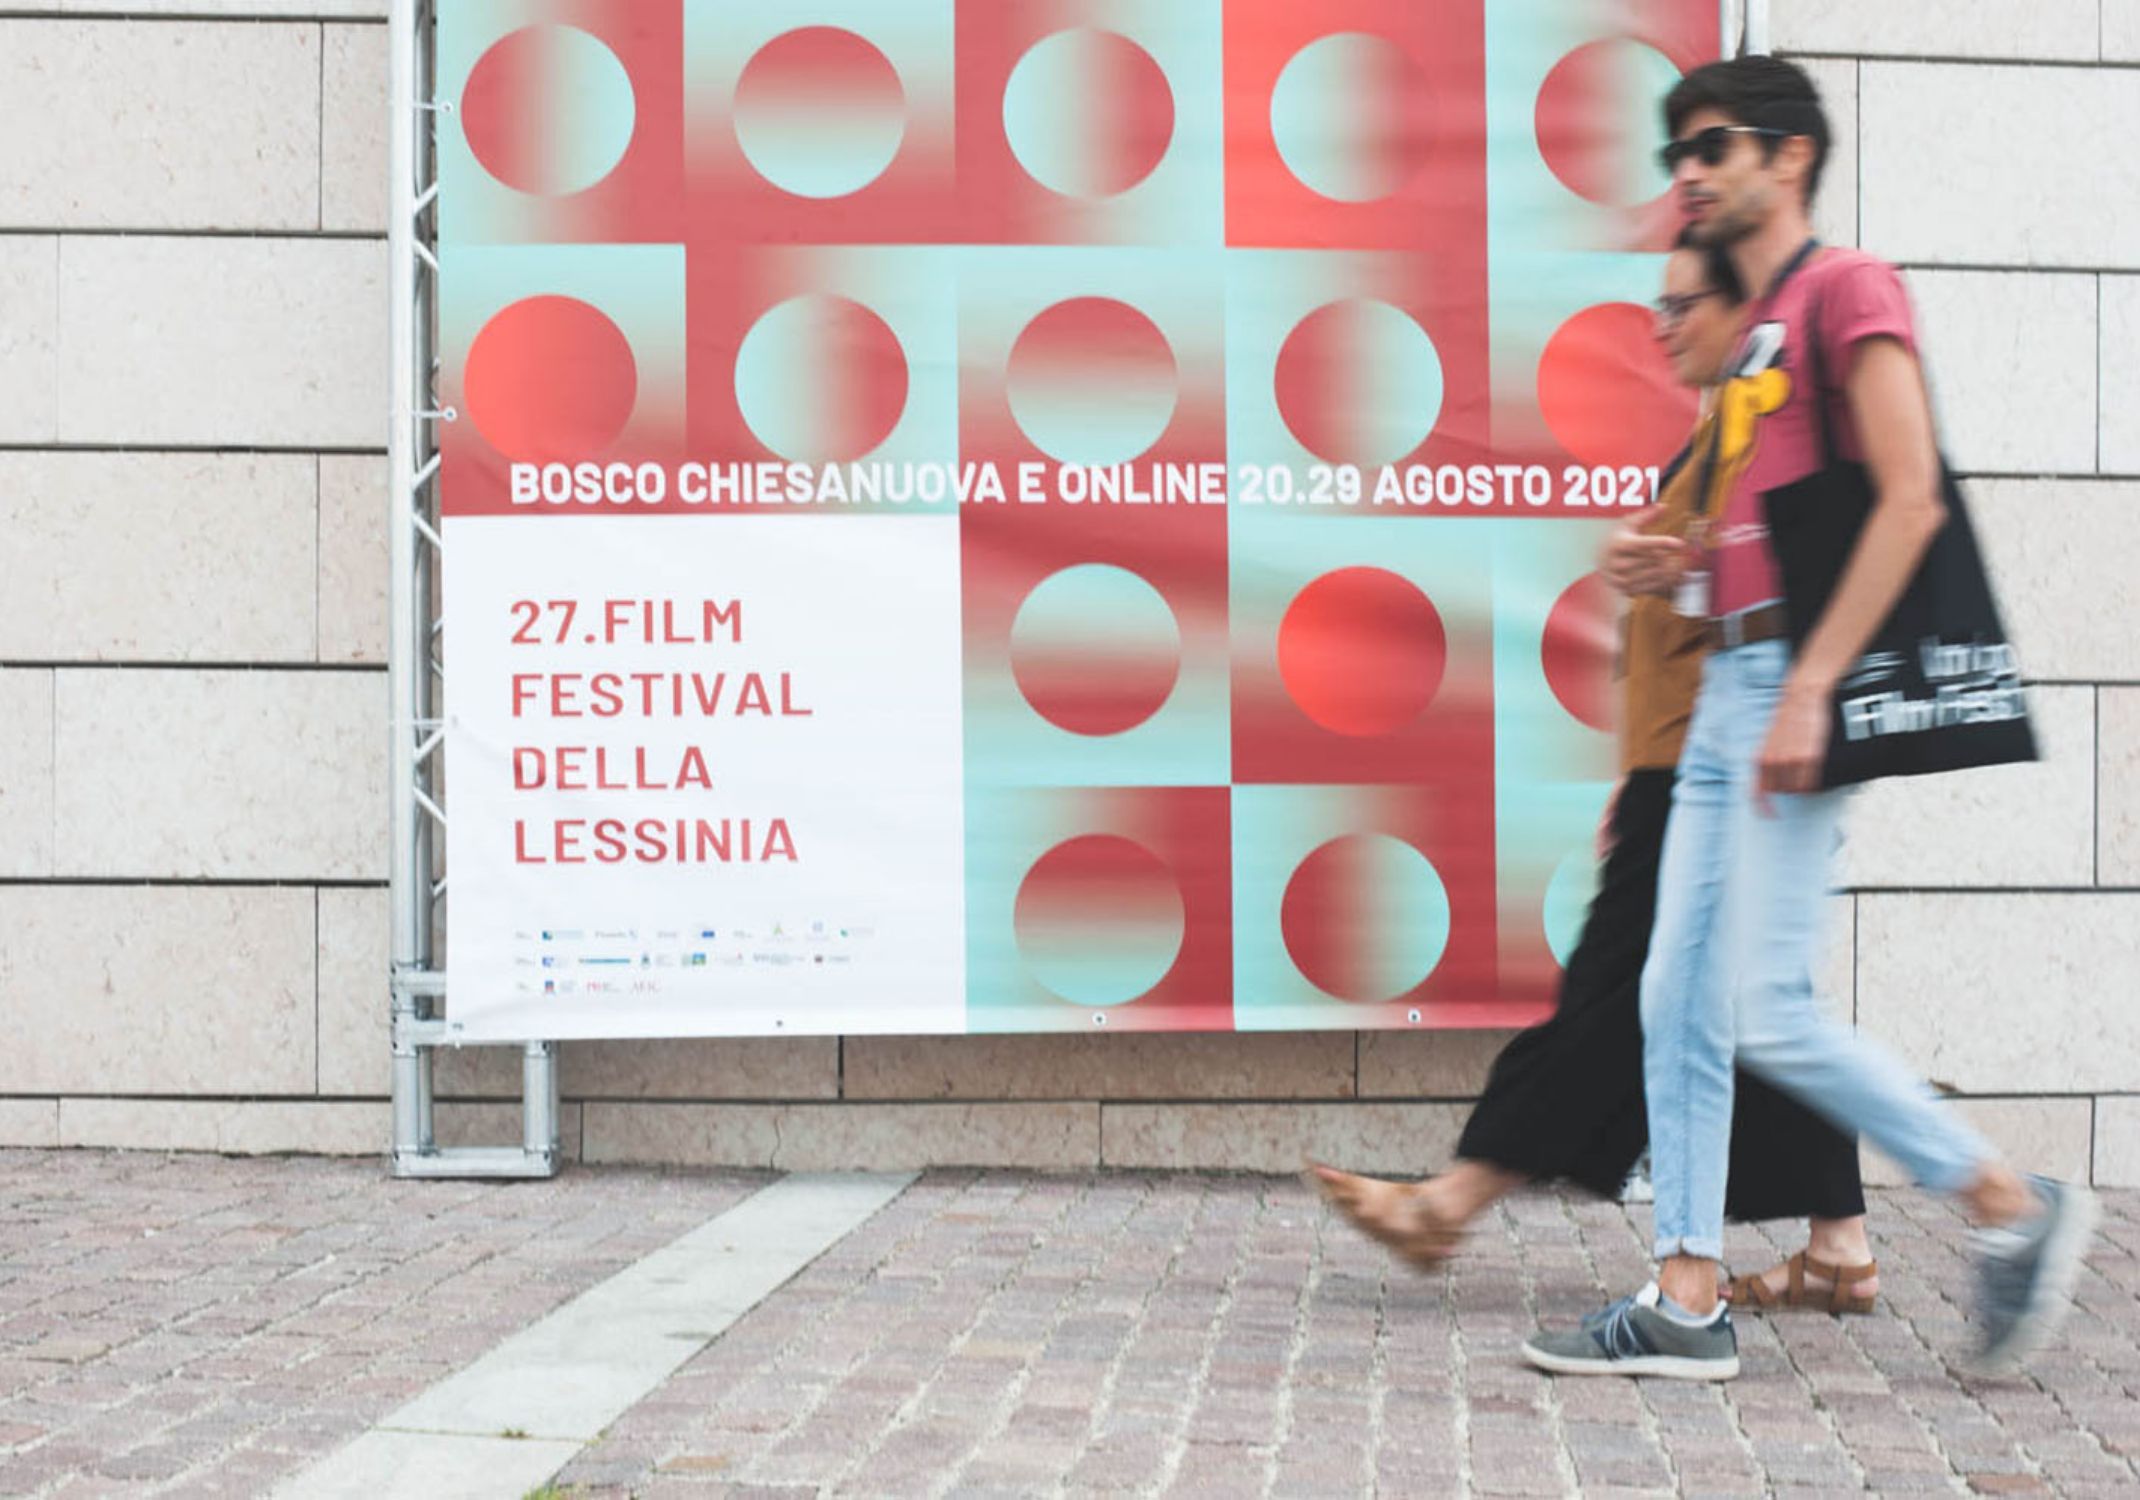 Persone passeggiano davanti al manifesto del Film Festival della Lessinia